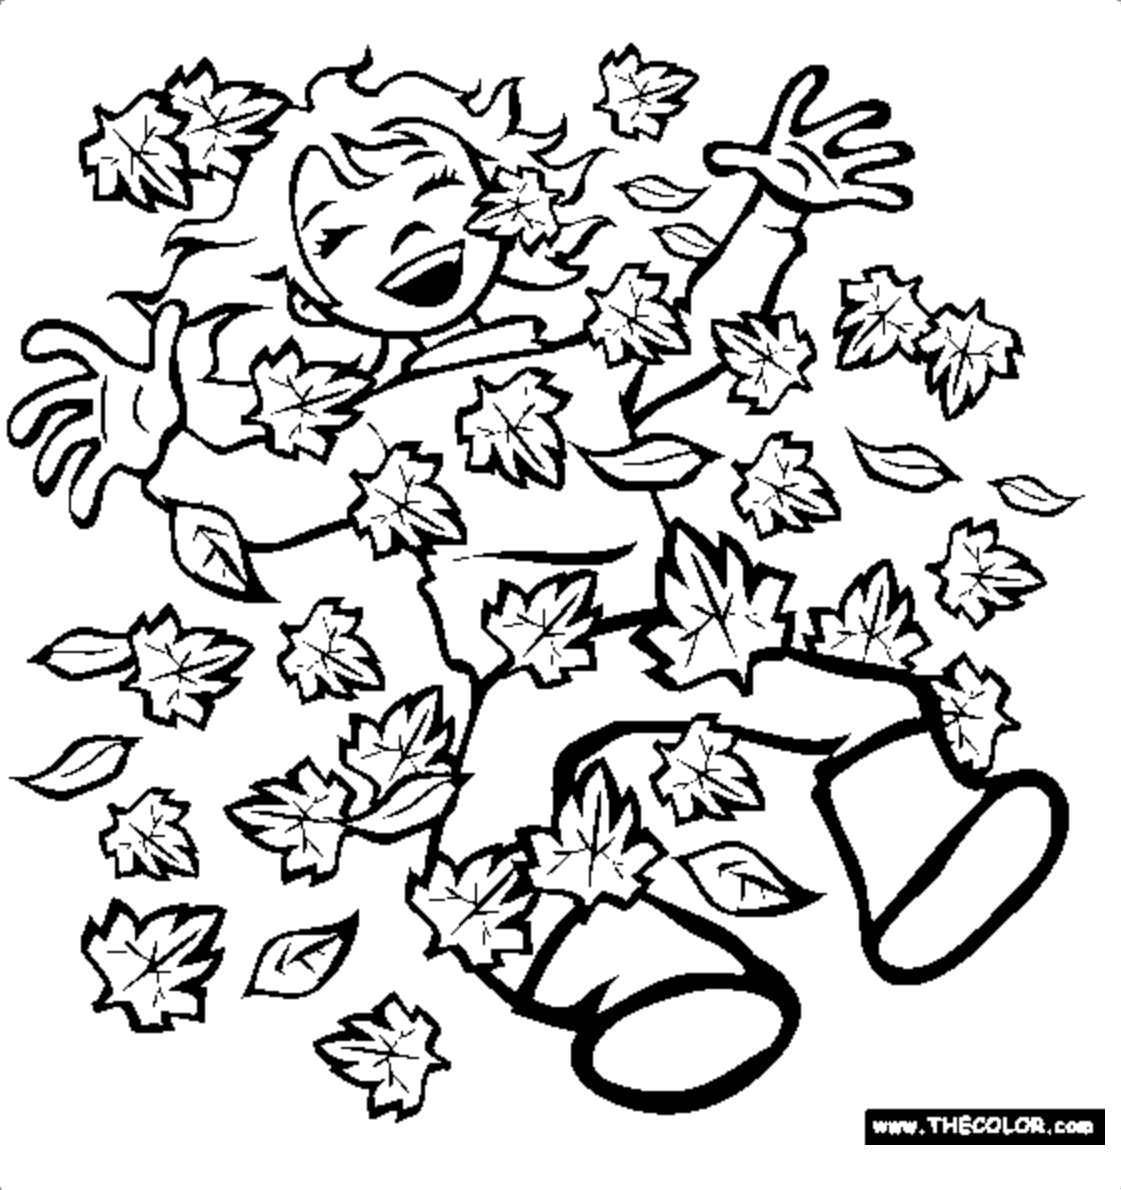 一个女孩躺在一堆树叶里